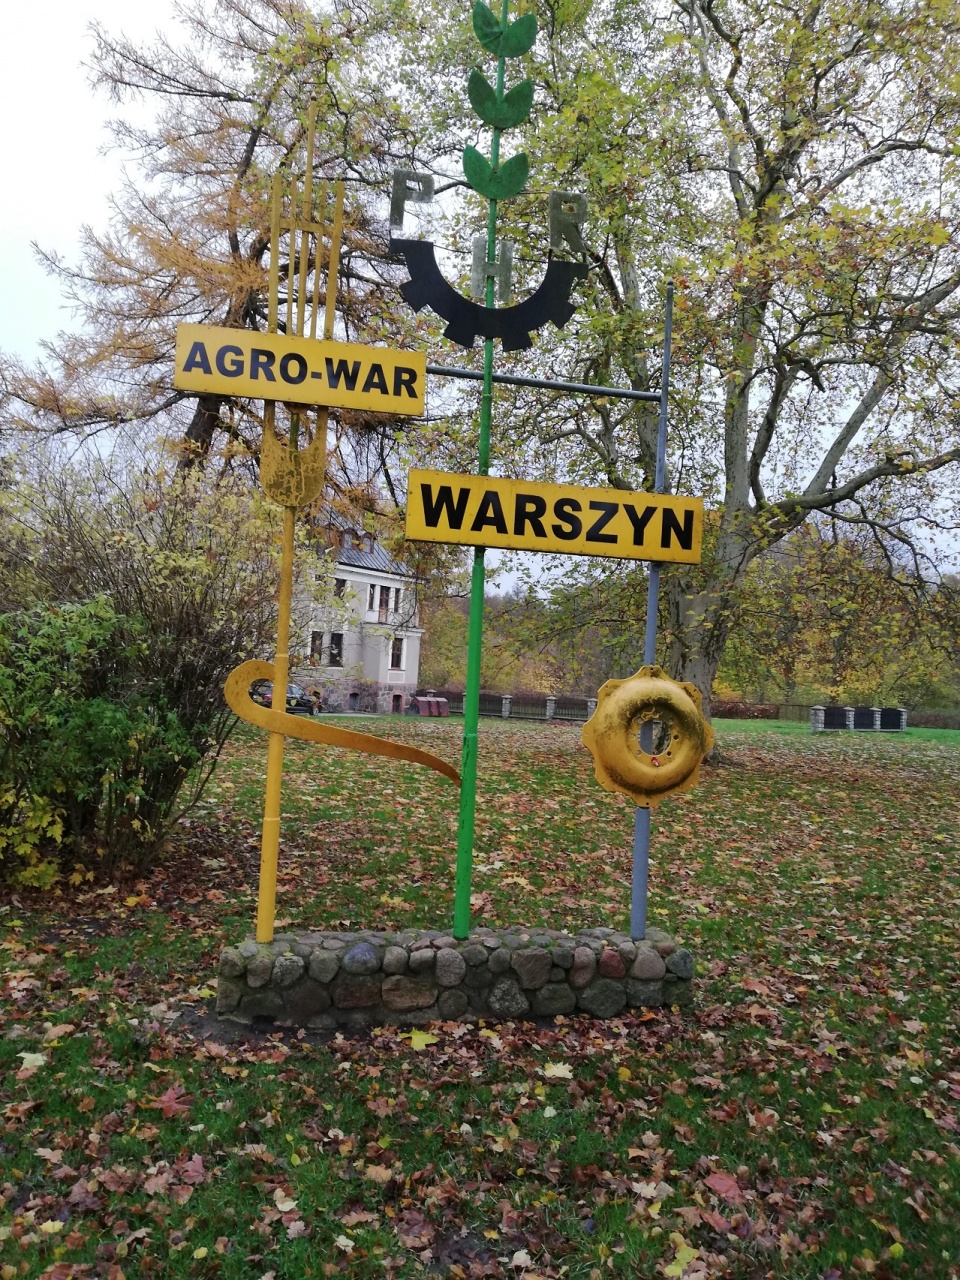 Spółka Agro-War w Warszynie